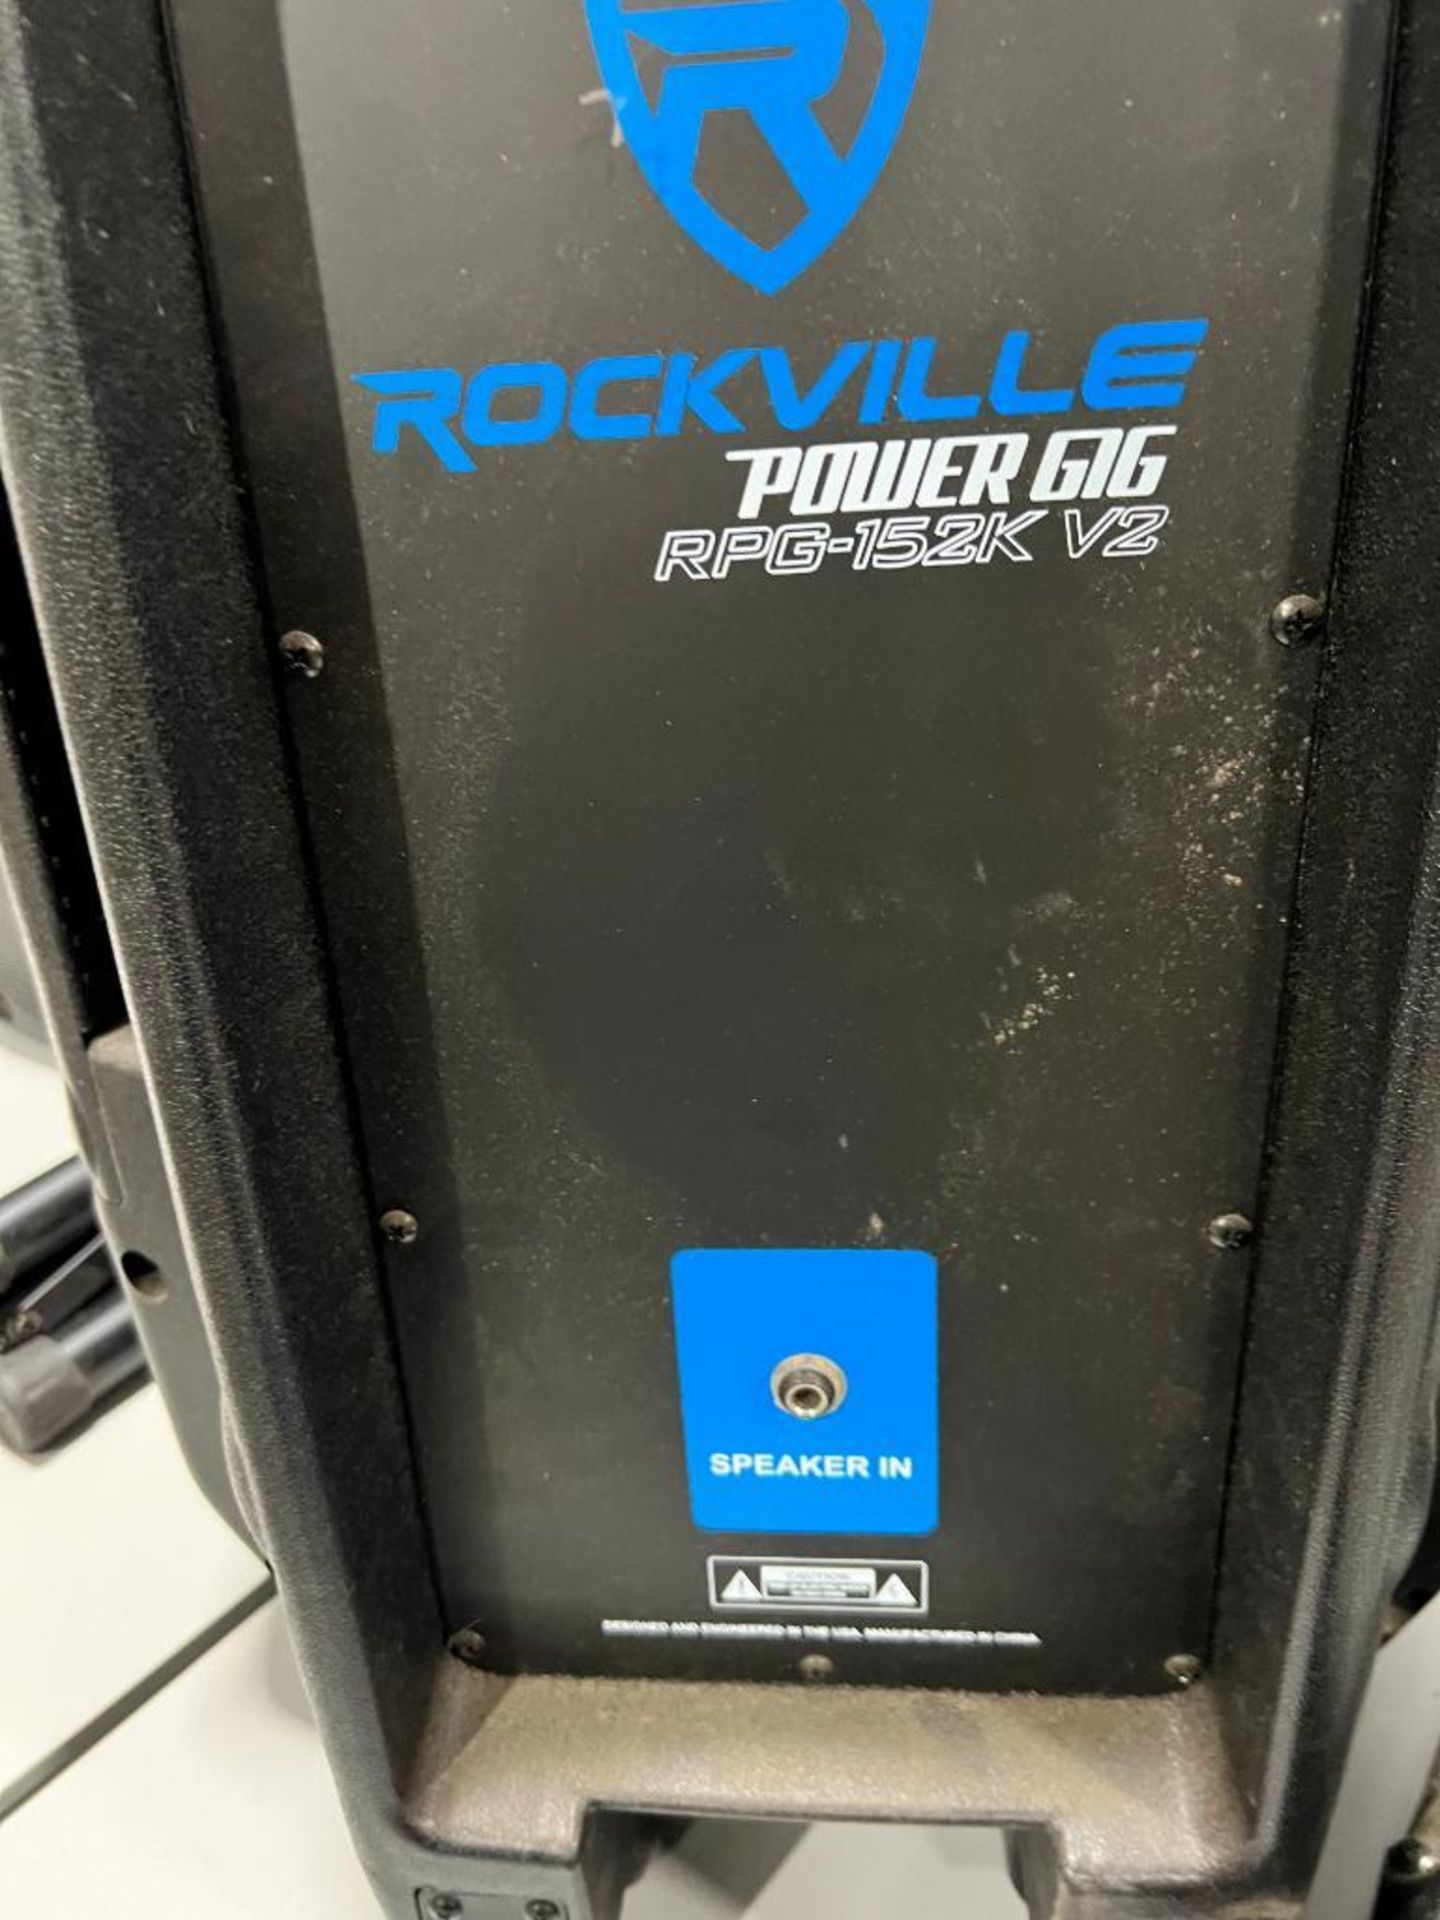 Rockville Power Gig Portable Speaker, Model RPG-152K V2, w/ Tripod - Image 3 of 3